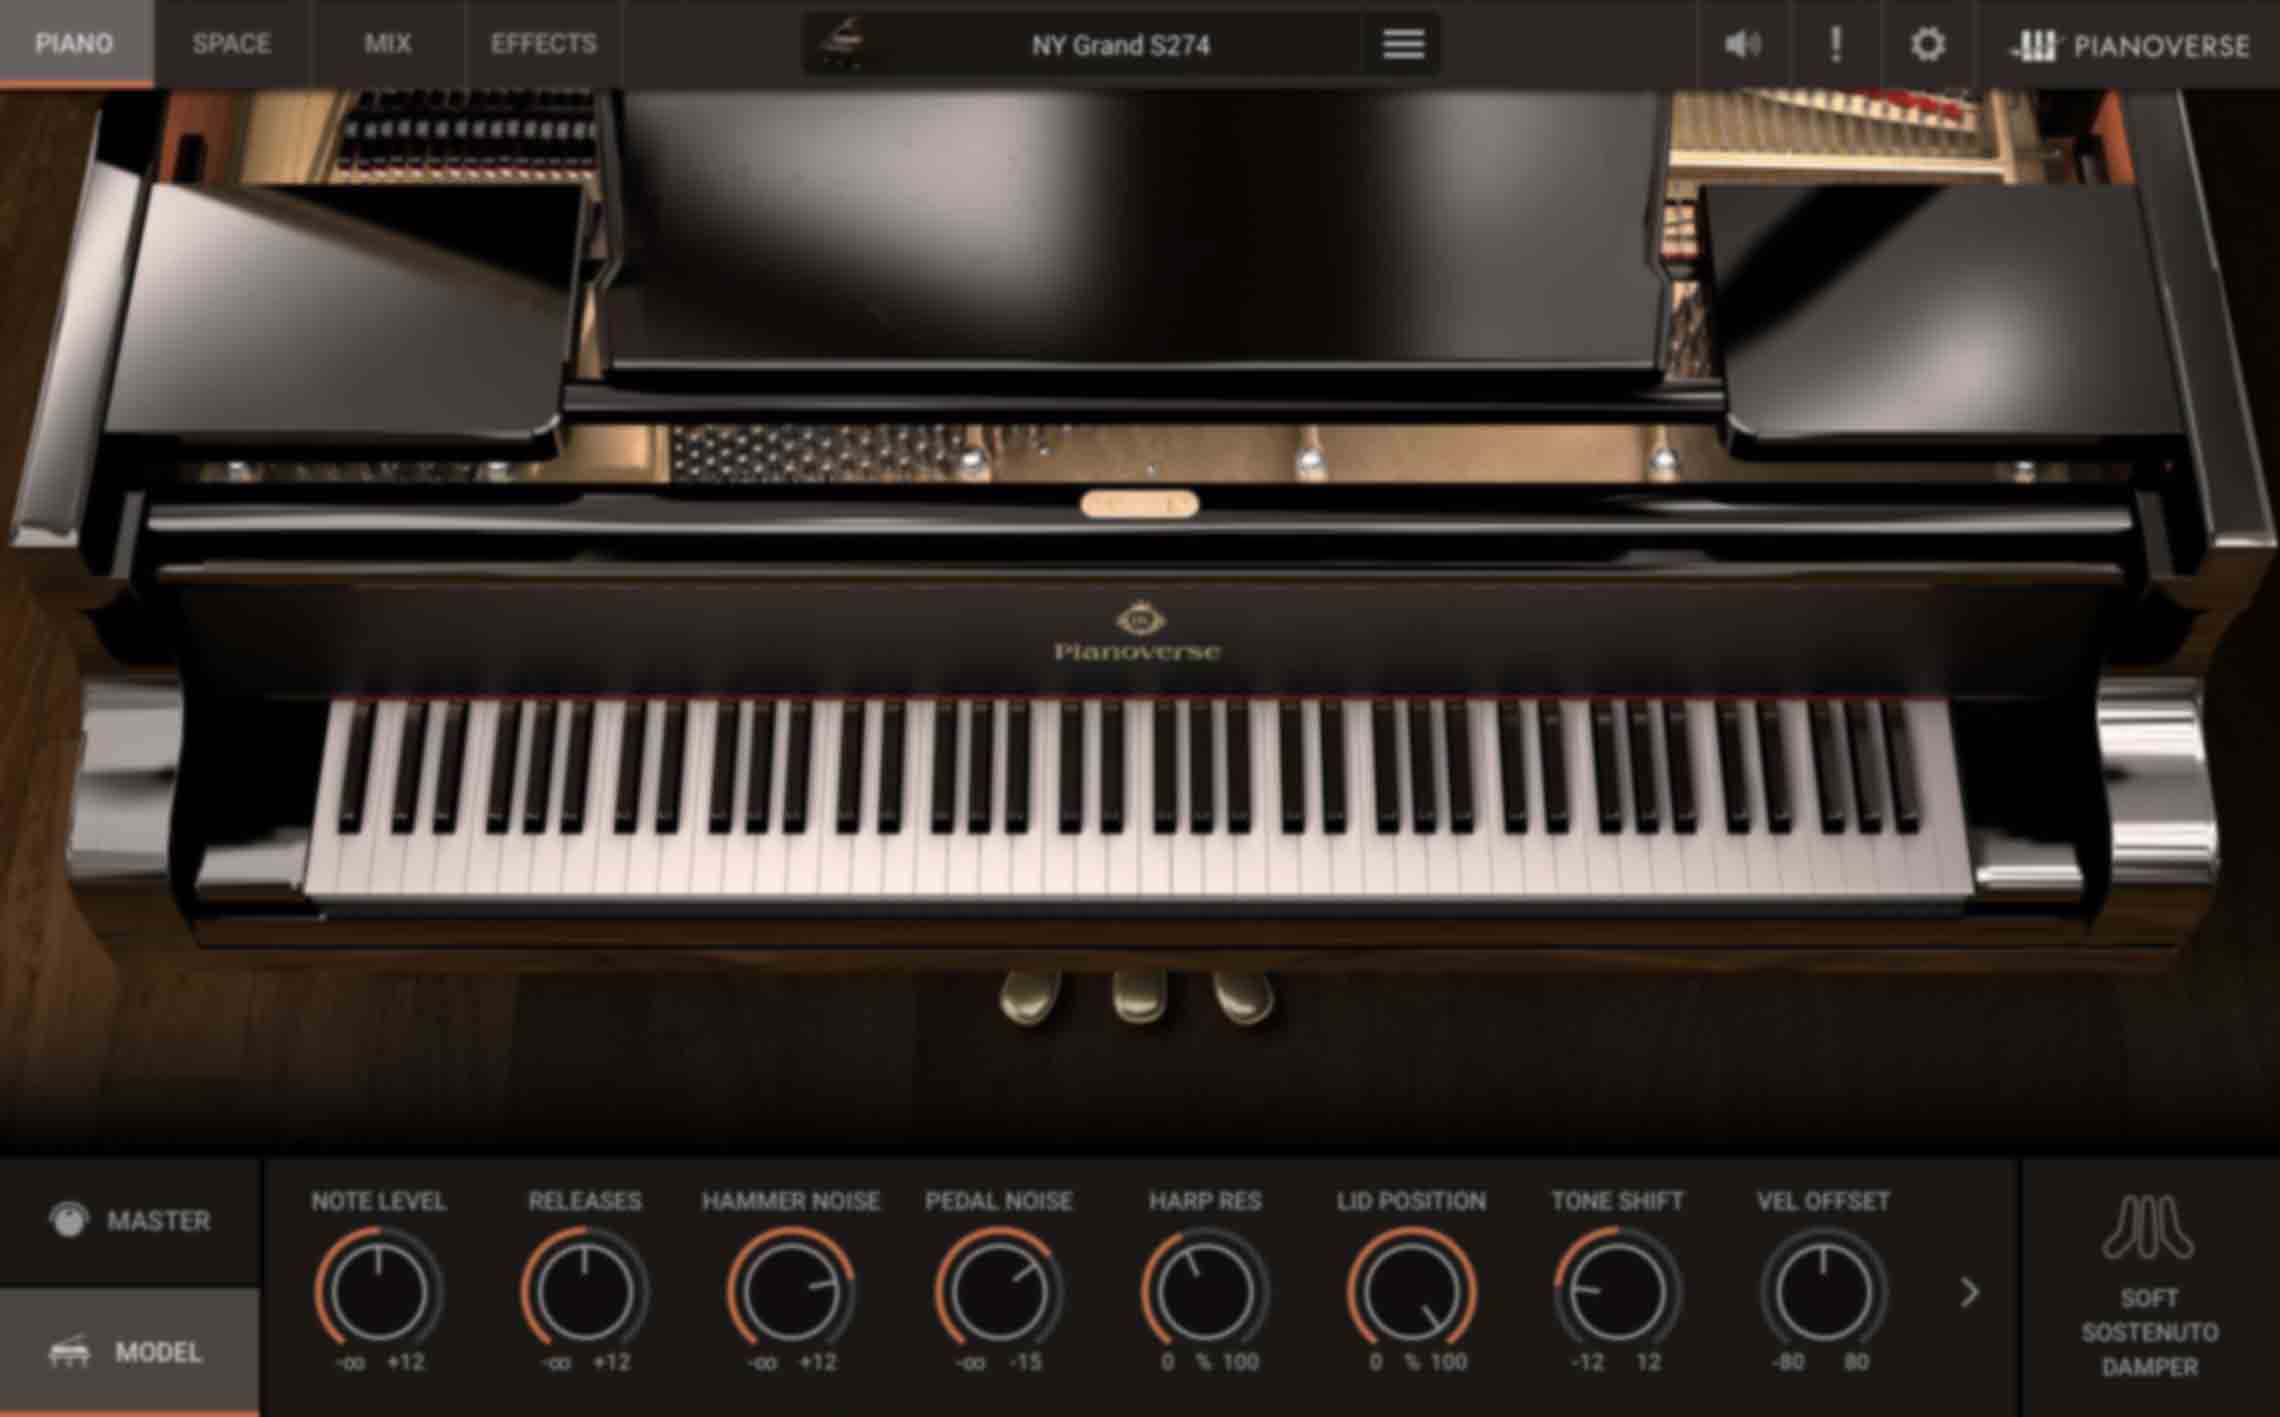 PIANO/MODEL - Oferece controles avançados dos atributos físicos de cada piano